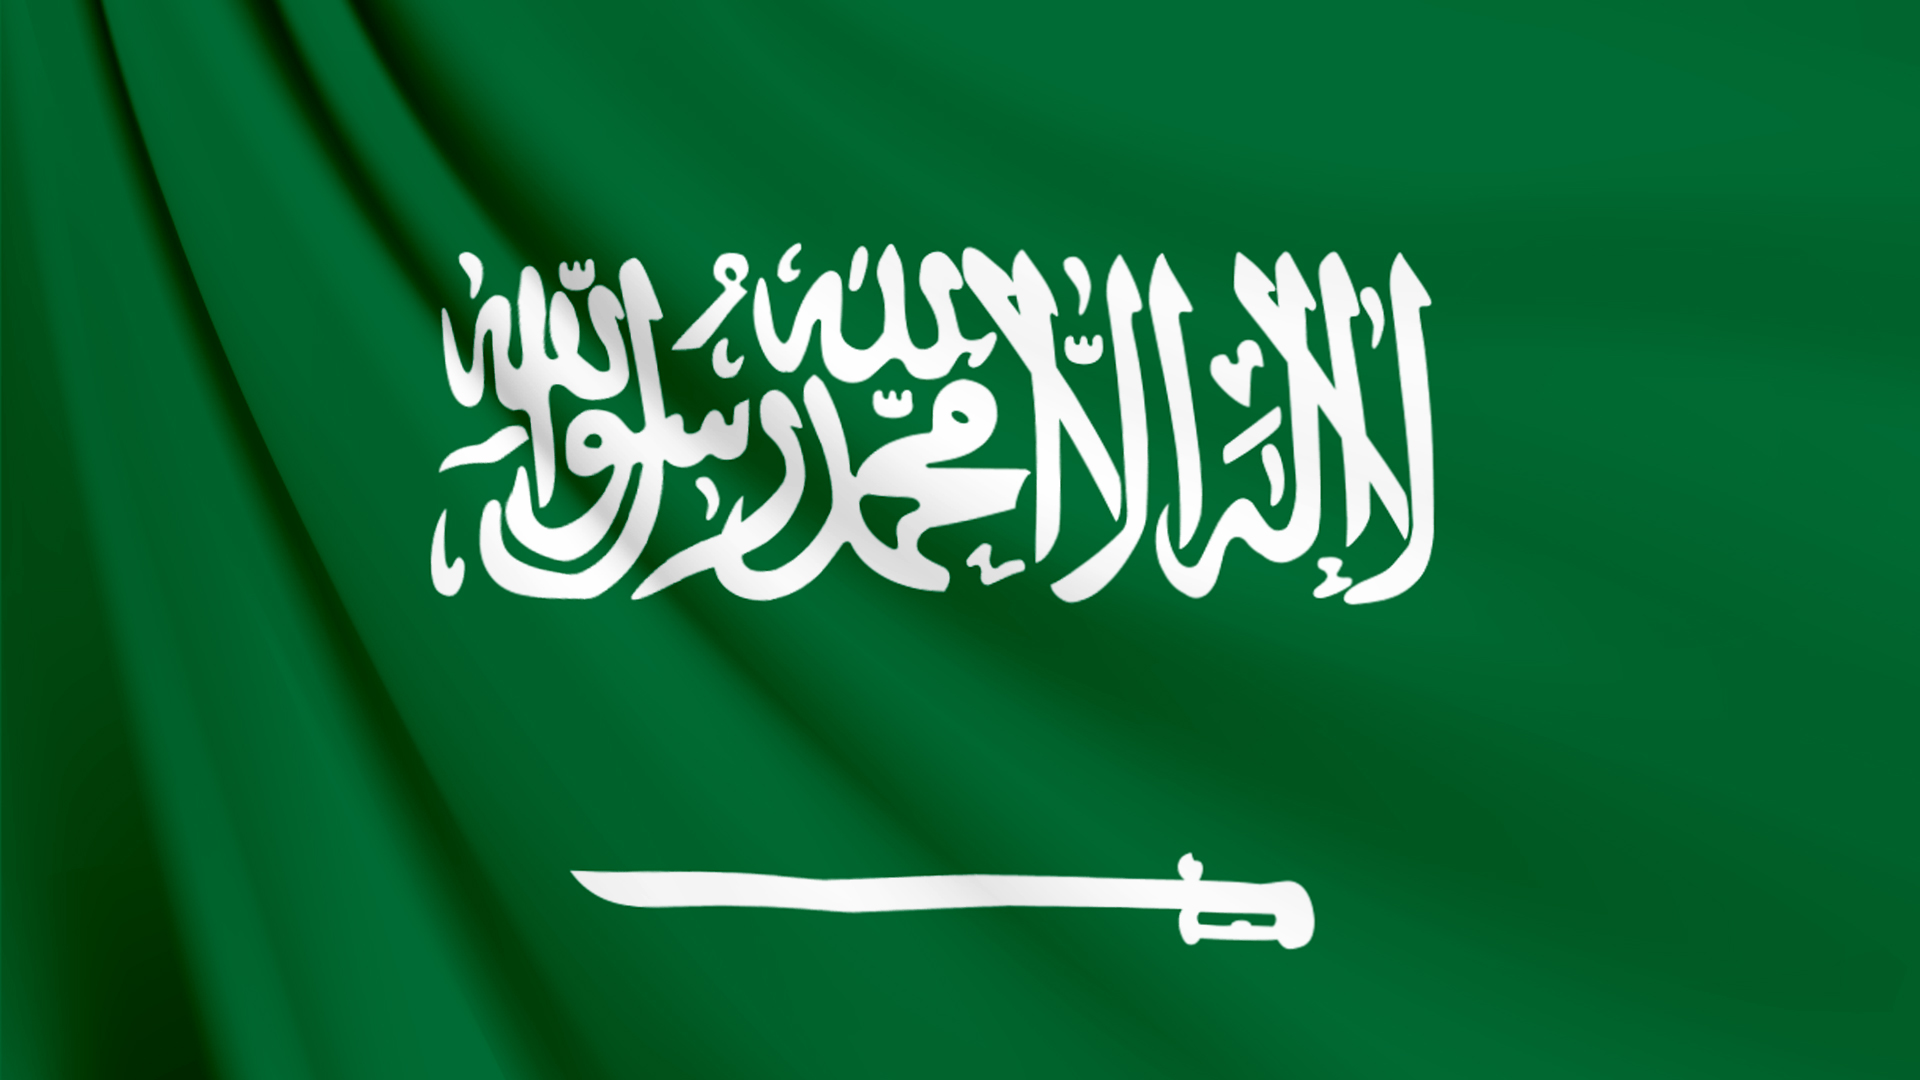 サウジアラビアの国旗 壁紙 画像 エムズライファー